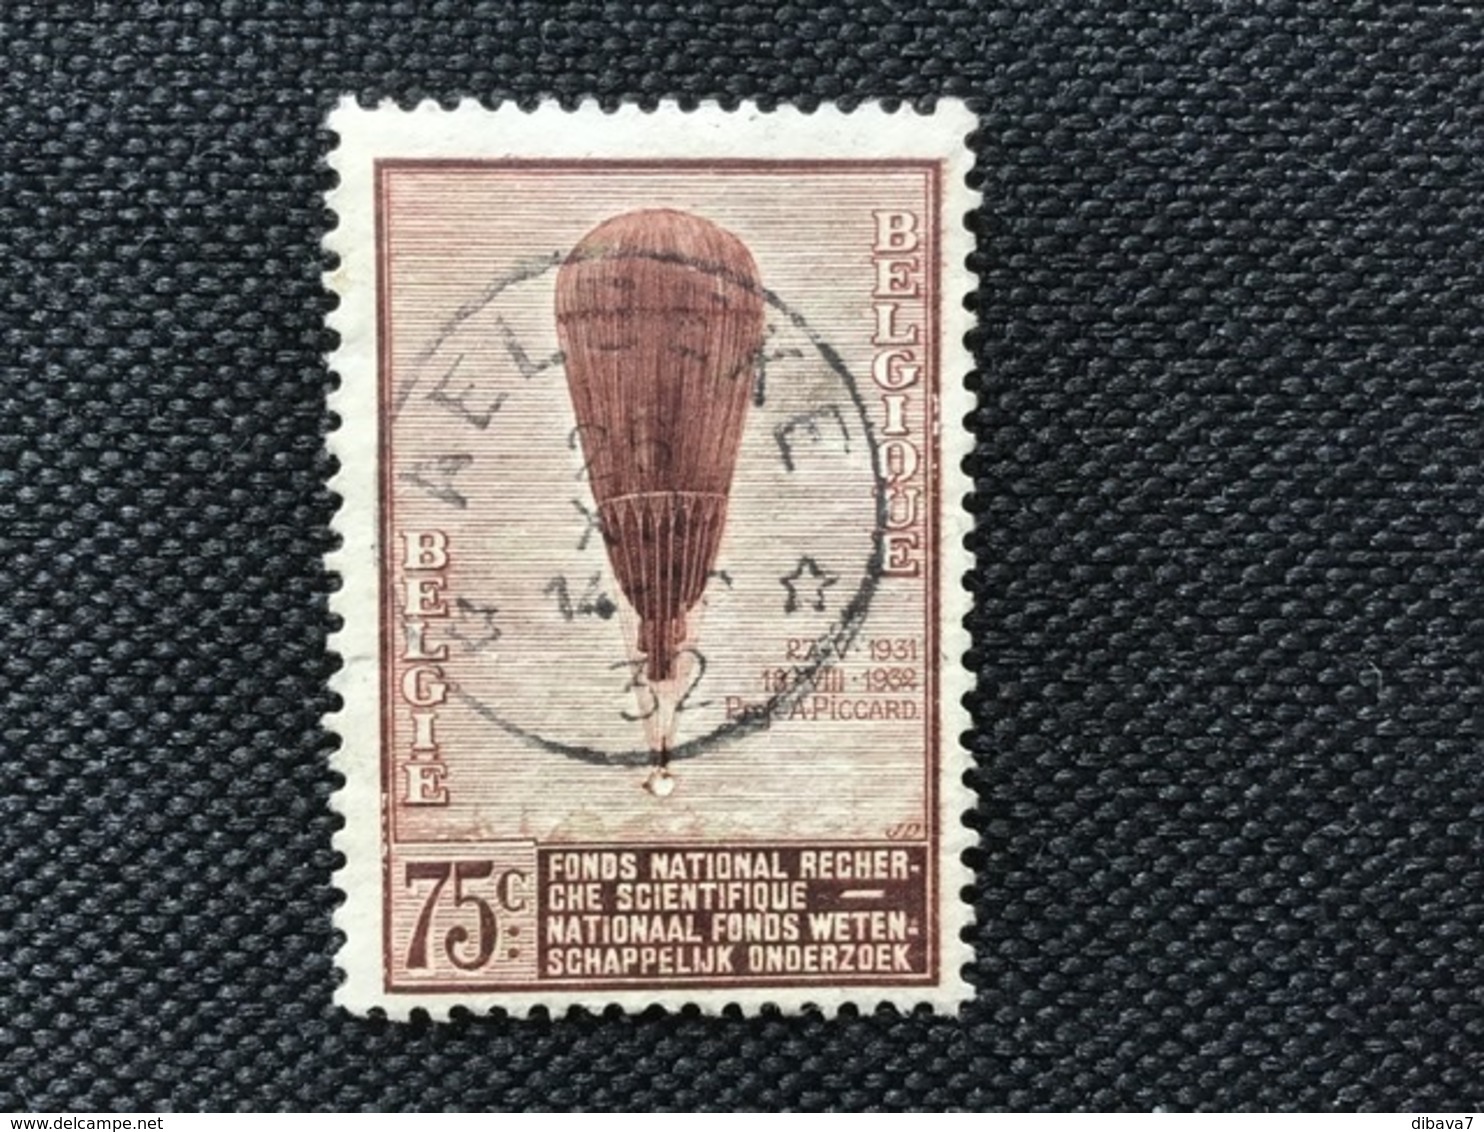 1932. OBP 353 . Used .Series ( Balloon Piccard ) Little Stamp AELBEKE 1932. - Gebruikt